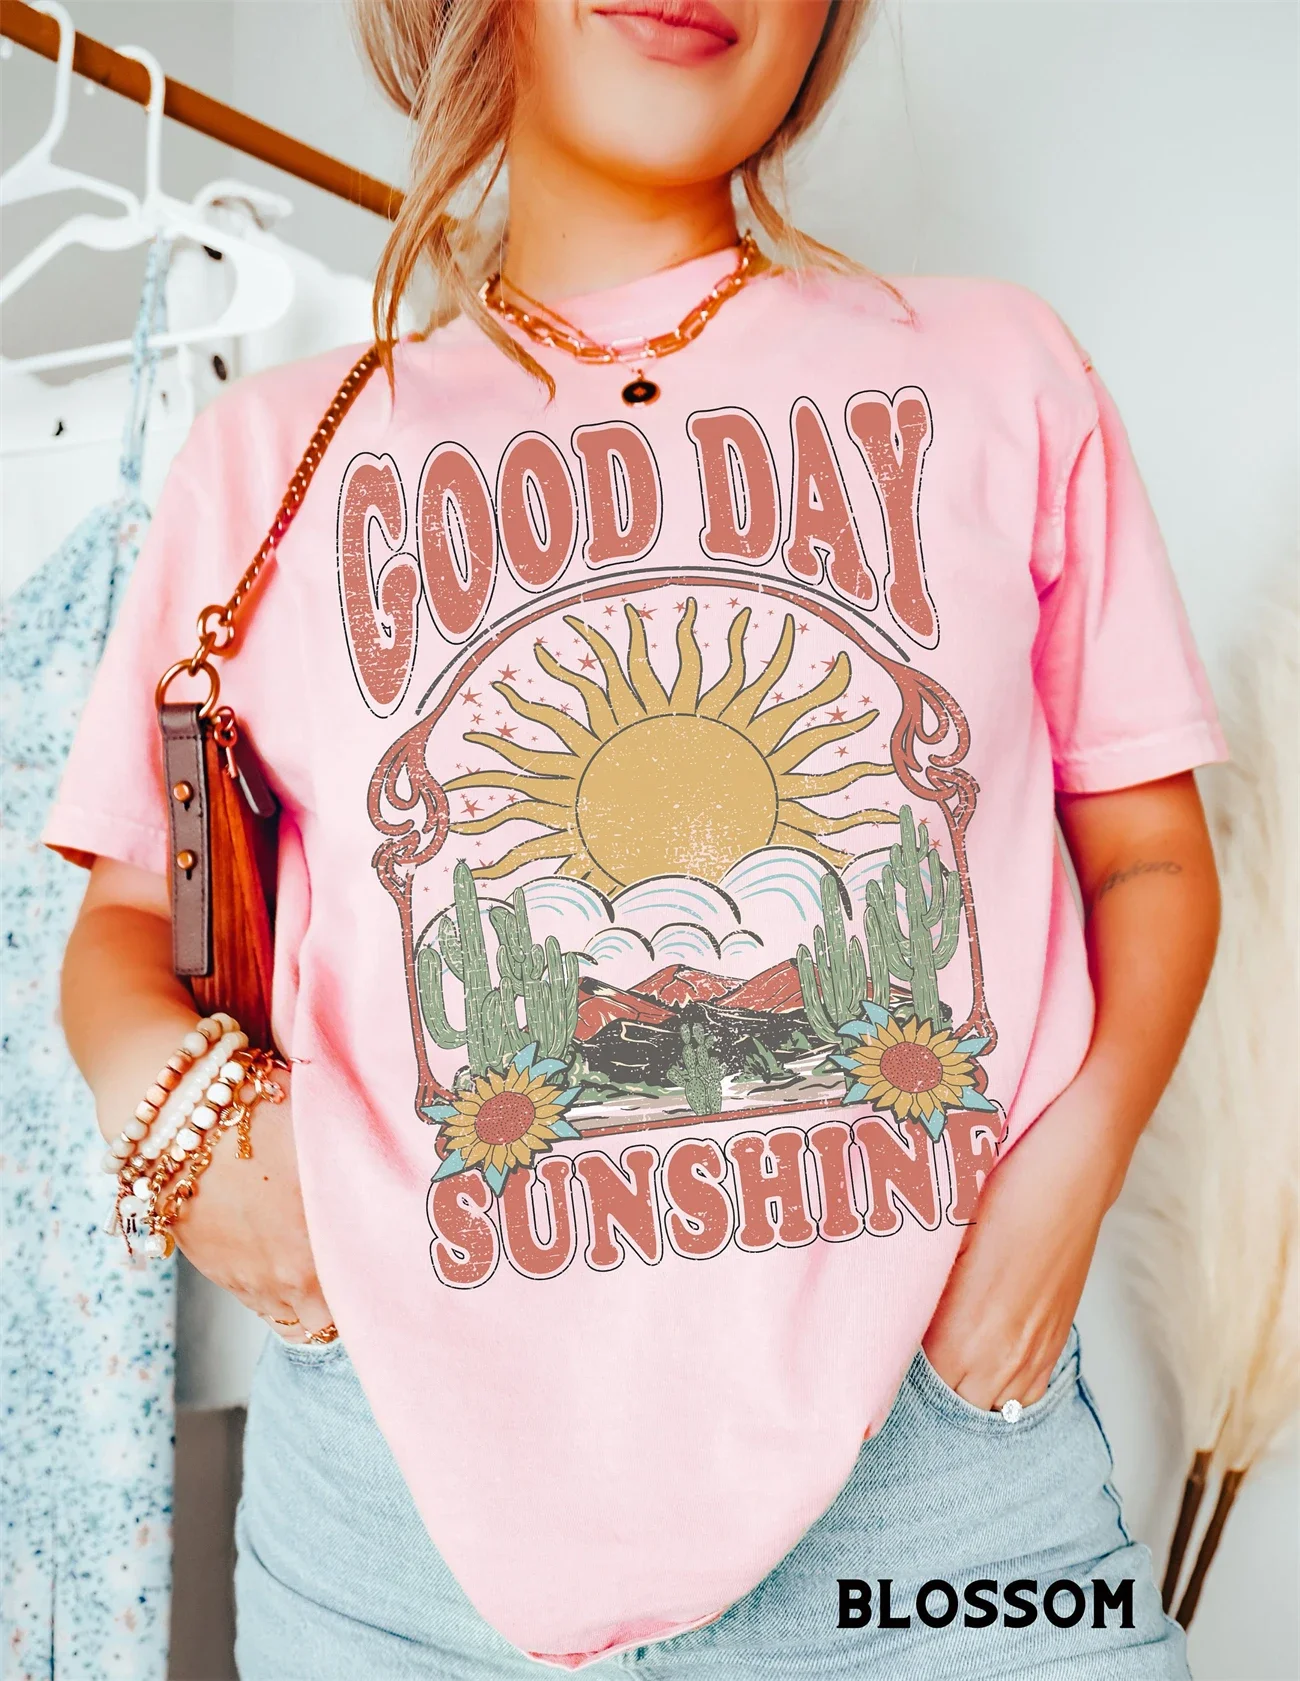 

Женская футболка с графическим принтом и надписью «Good Day Sunshine»